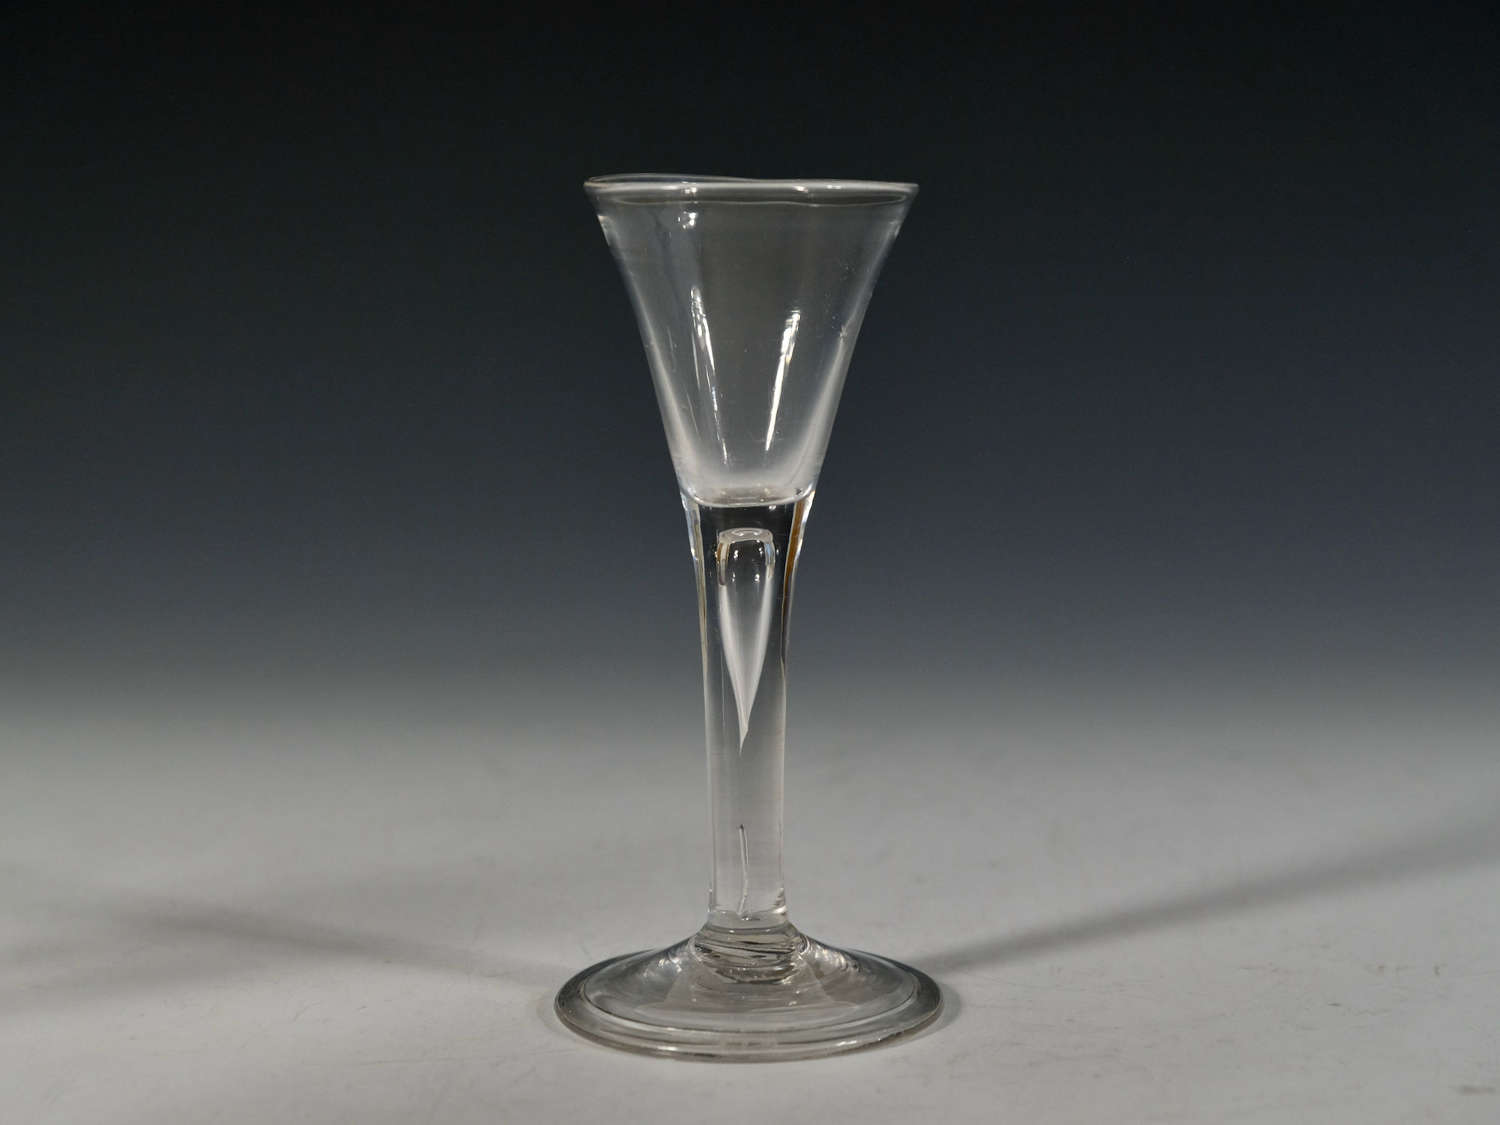 Plain stem drawn trumpet wine glass c1750